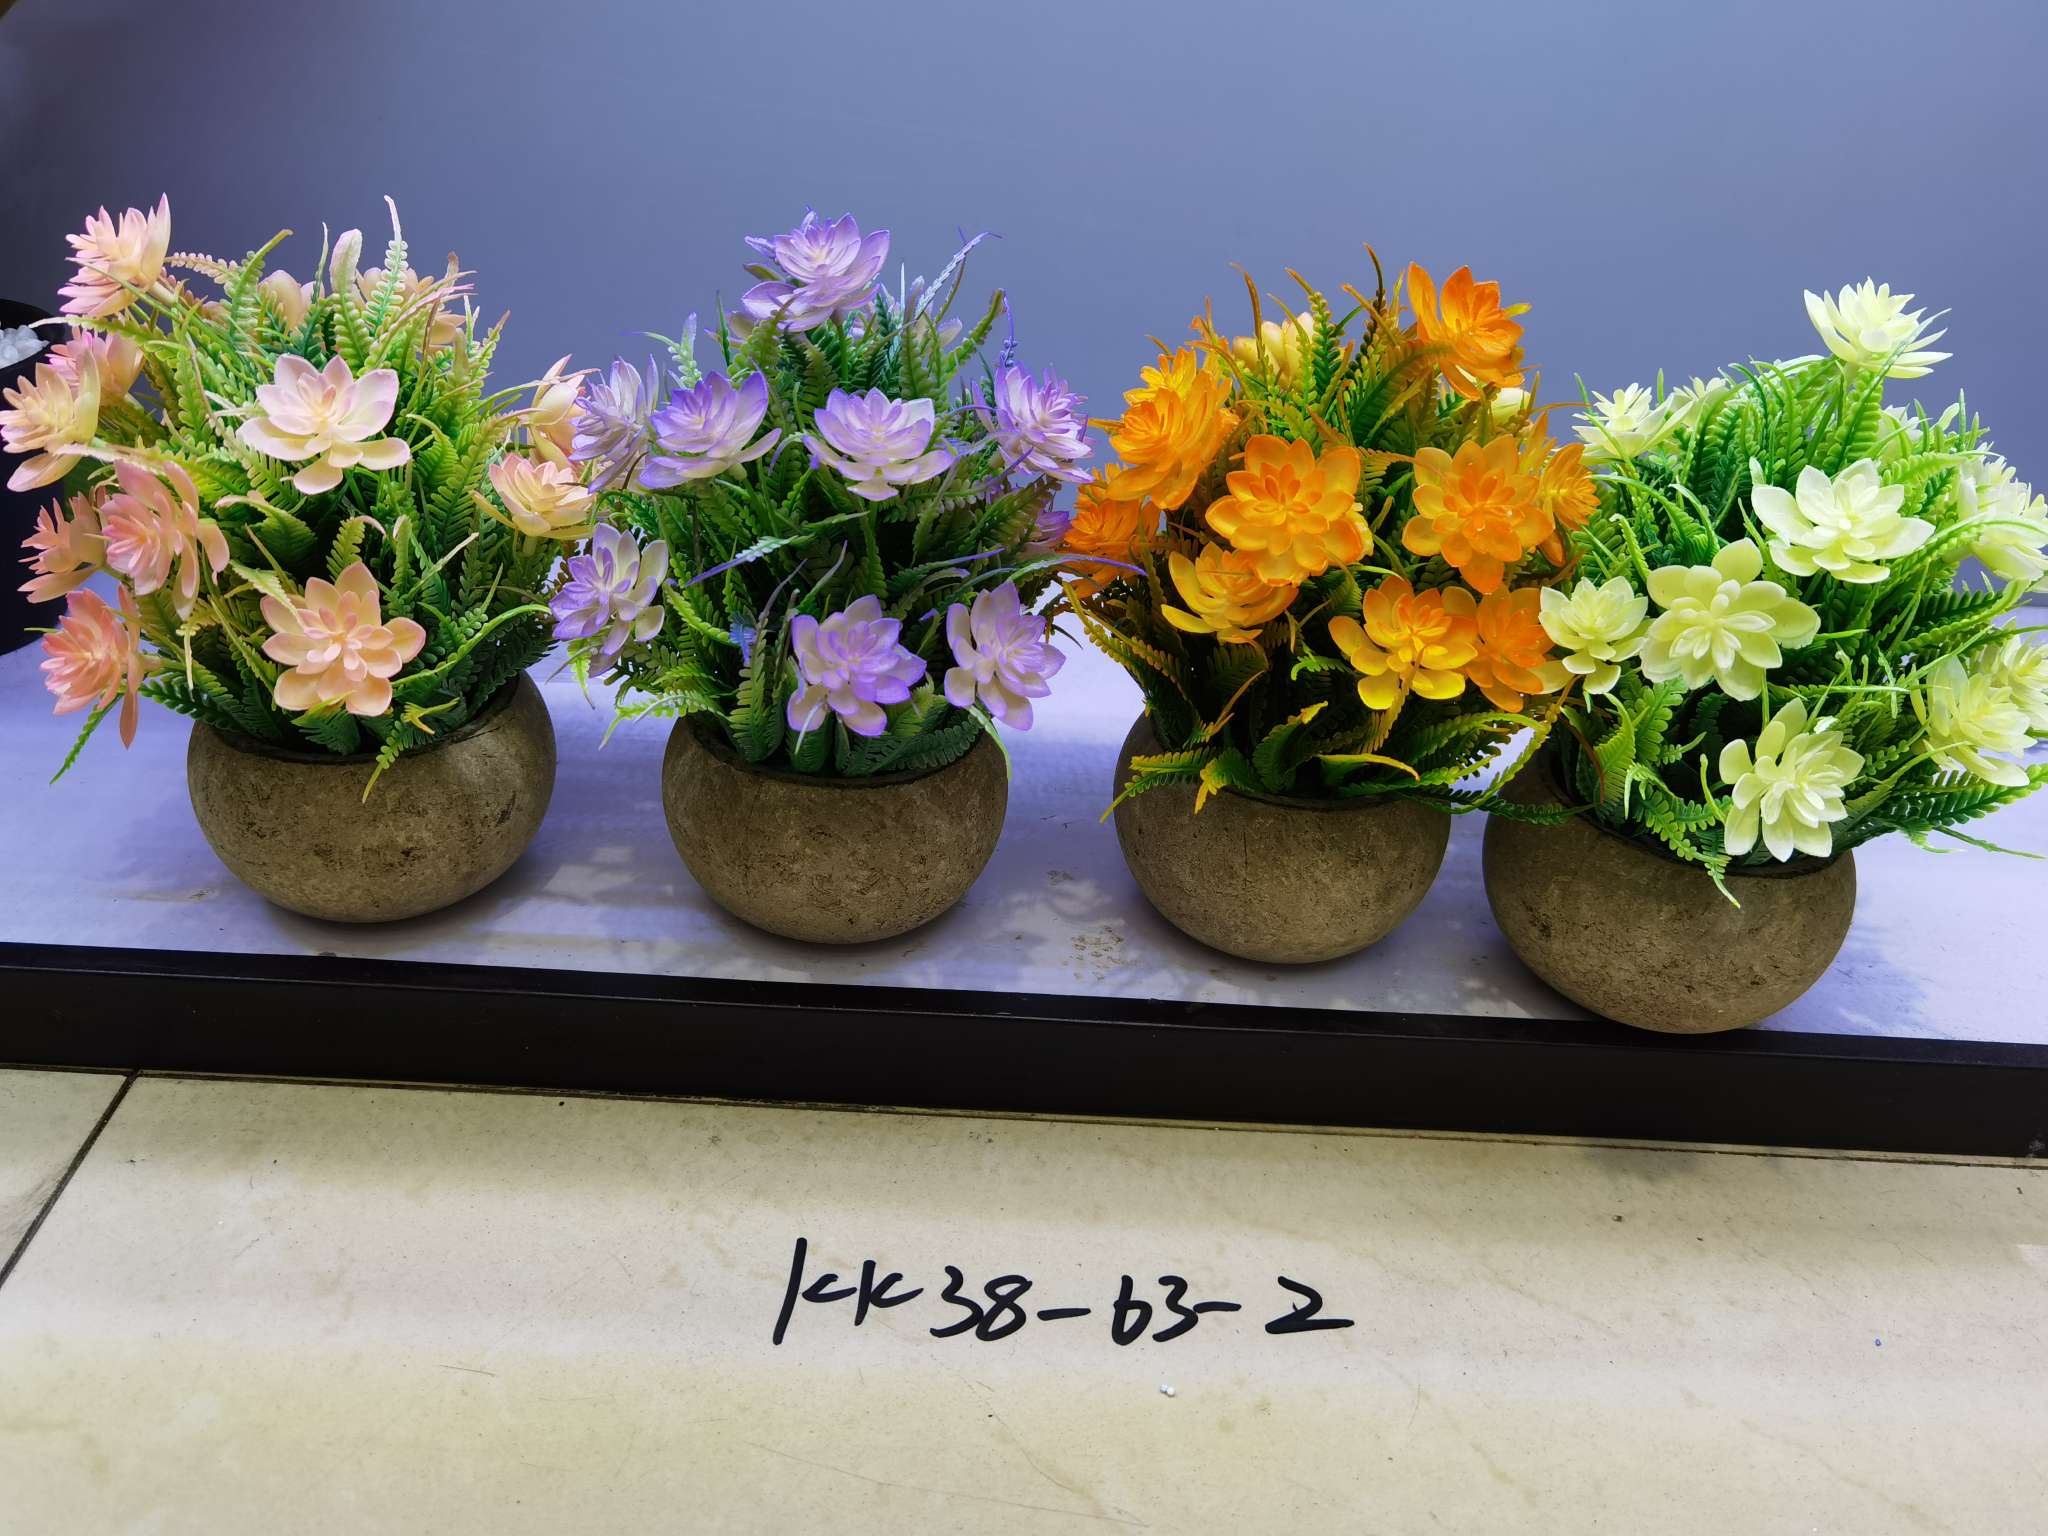 仿真植物小盆栽北欧客厅假花装饰盆景餐桌仿真花摆件绿植摆设产品图